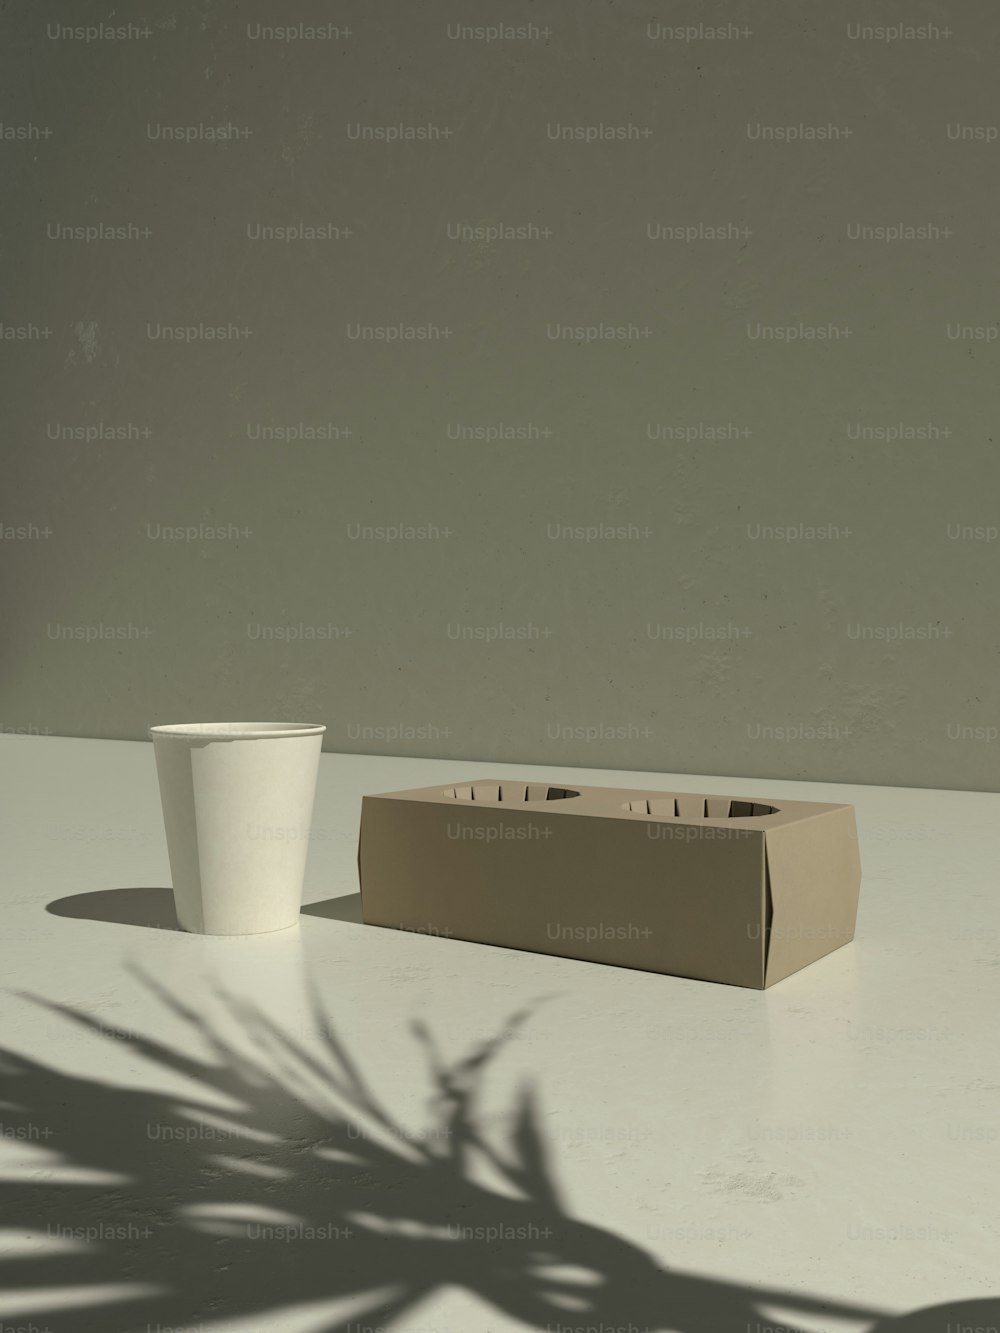 테이블 위의 상자와 컵